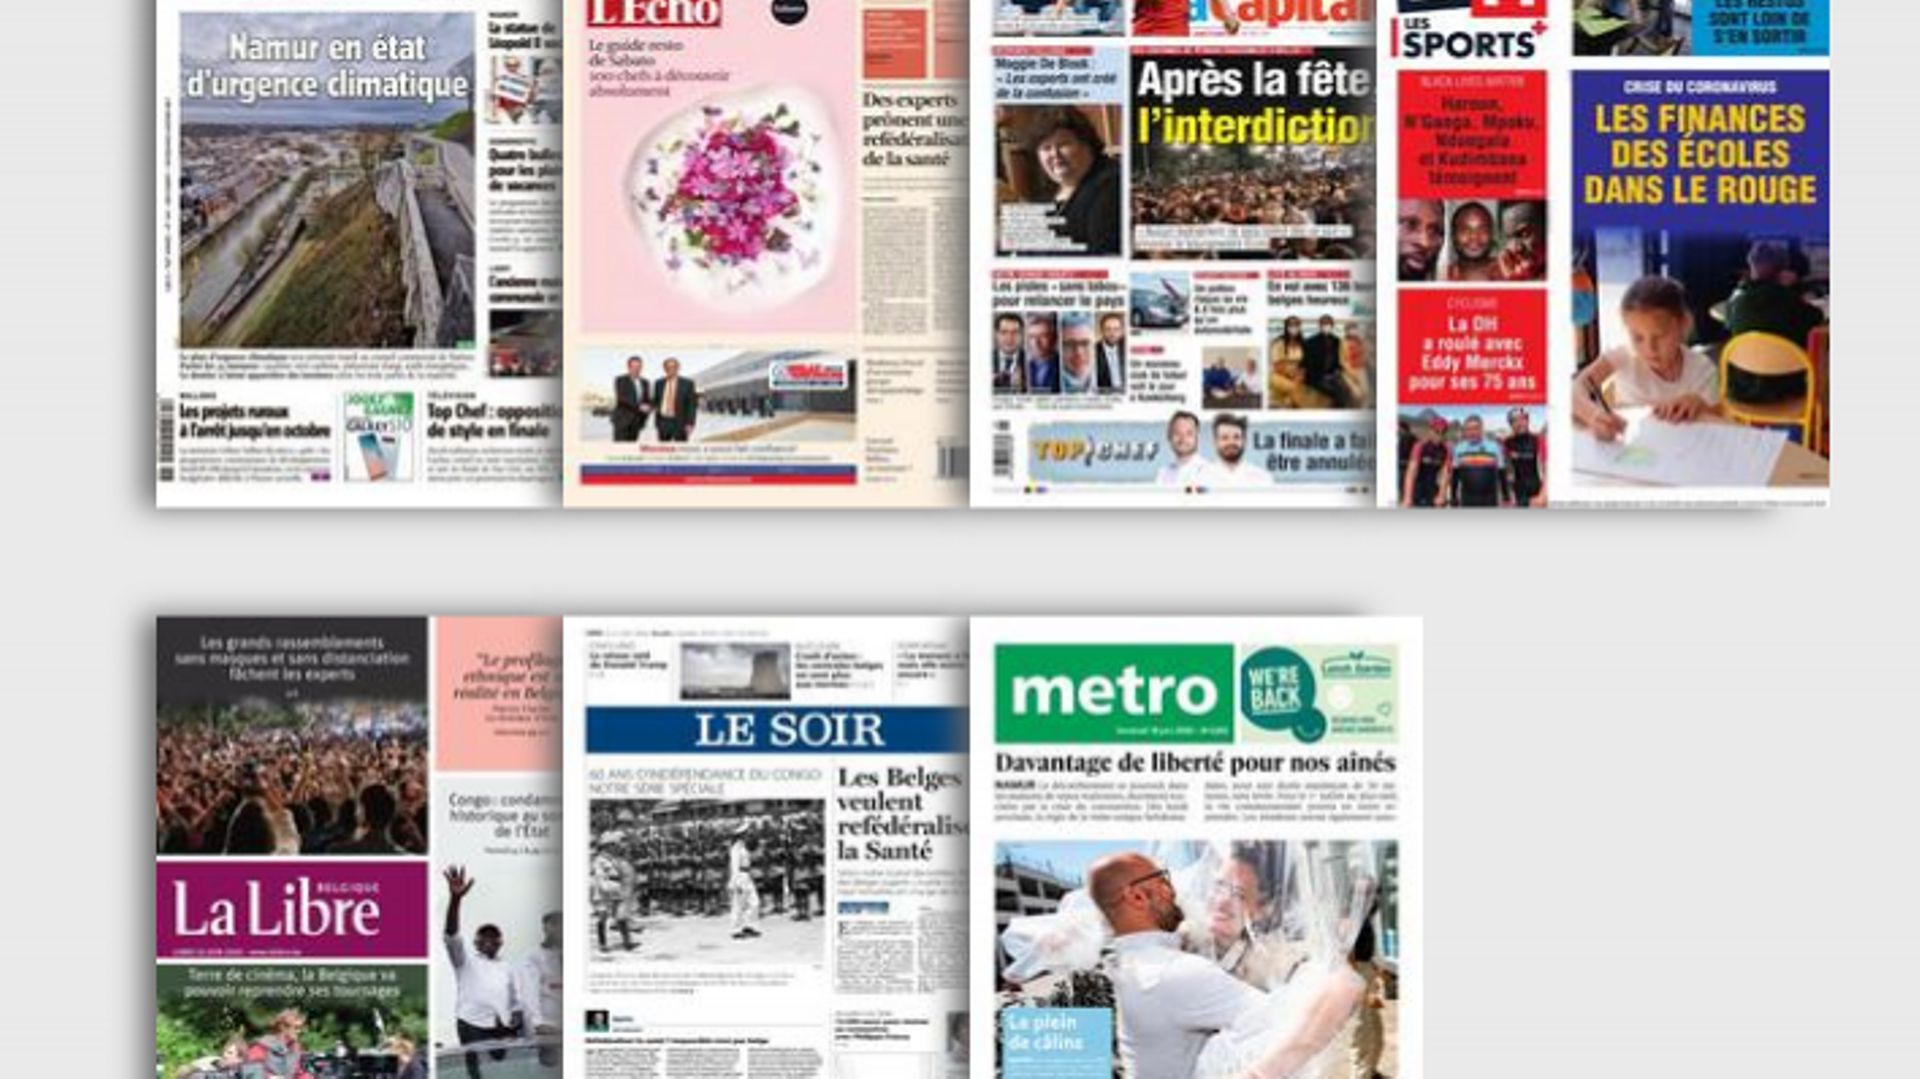 coronavirus-et-medias-les-ventes-d-abonnements-aux-journaux-en-forte-hausse-pendant-le-confinement